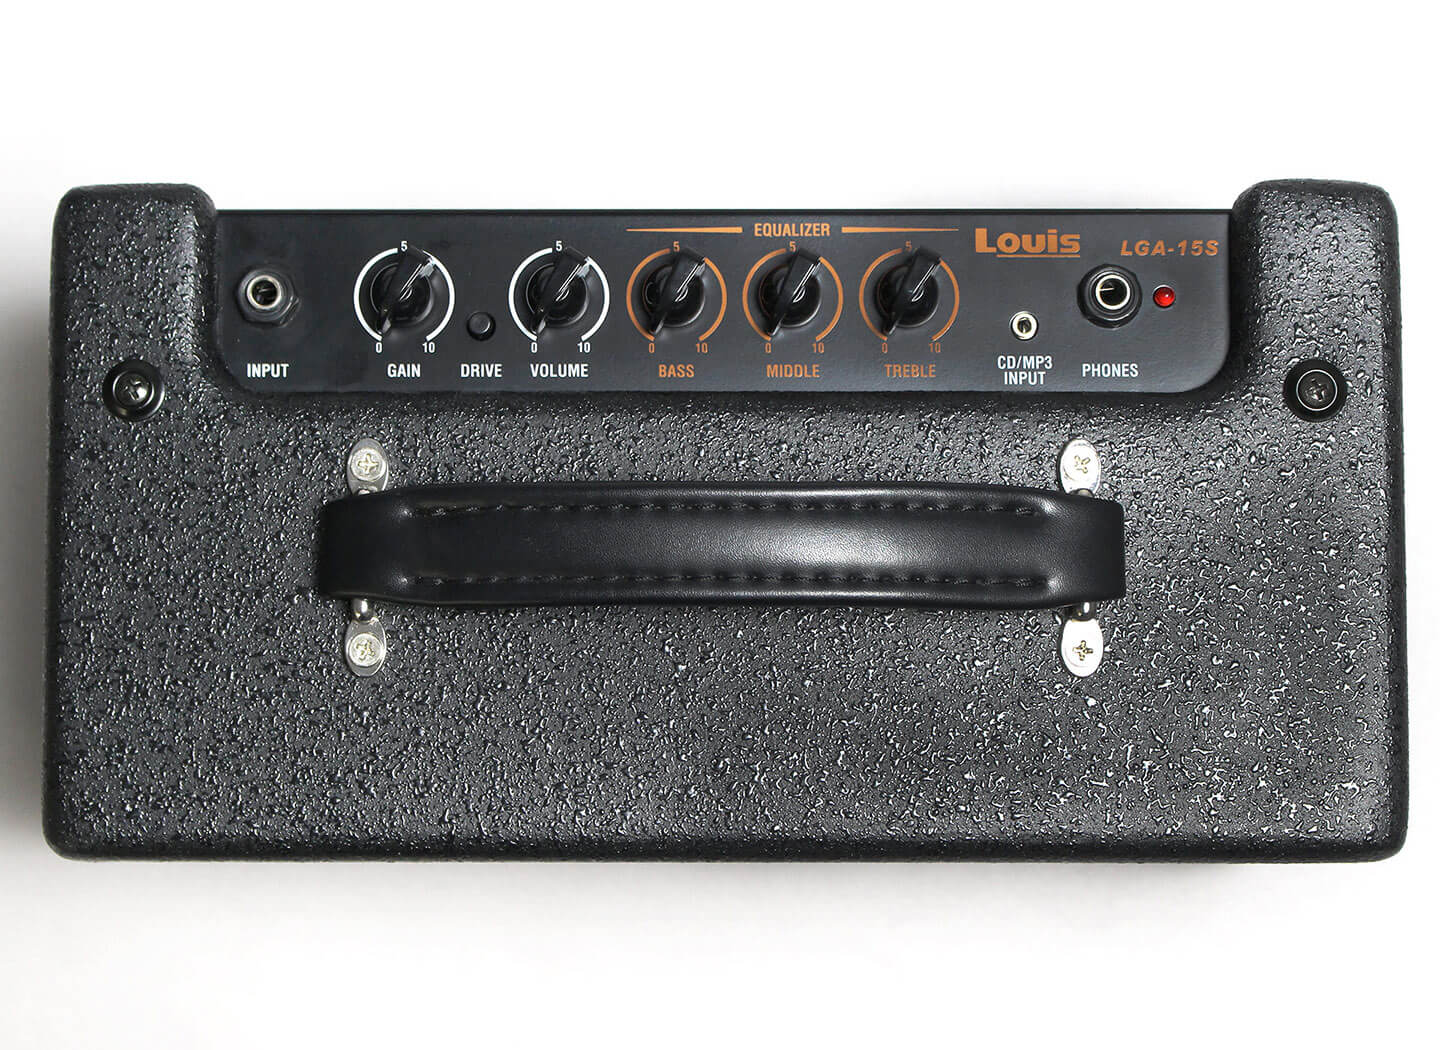 ネットワーク全体の最低価格に挑戦 Louis ギターアンプ LGA-15S ルイス 15W